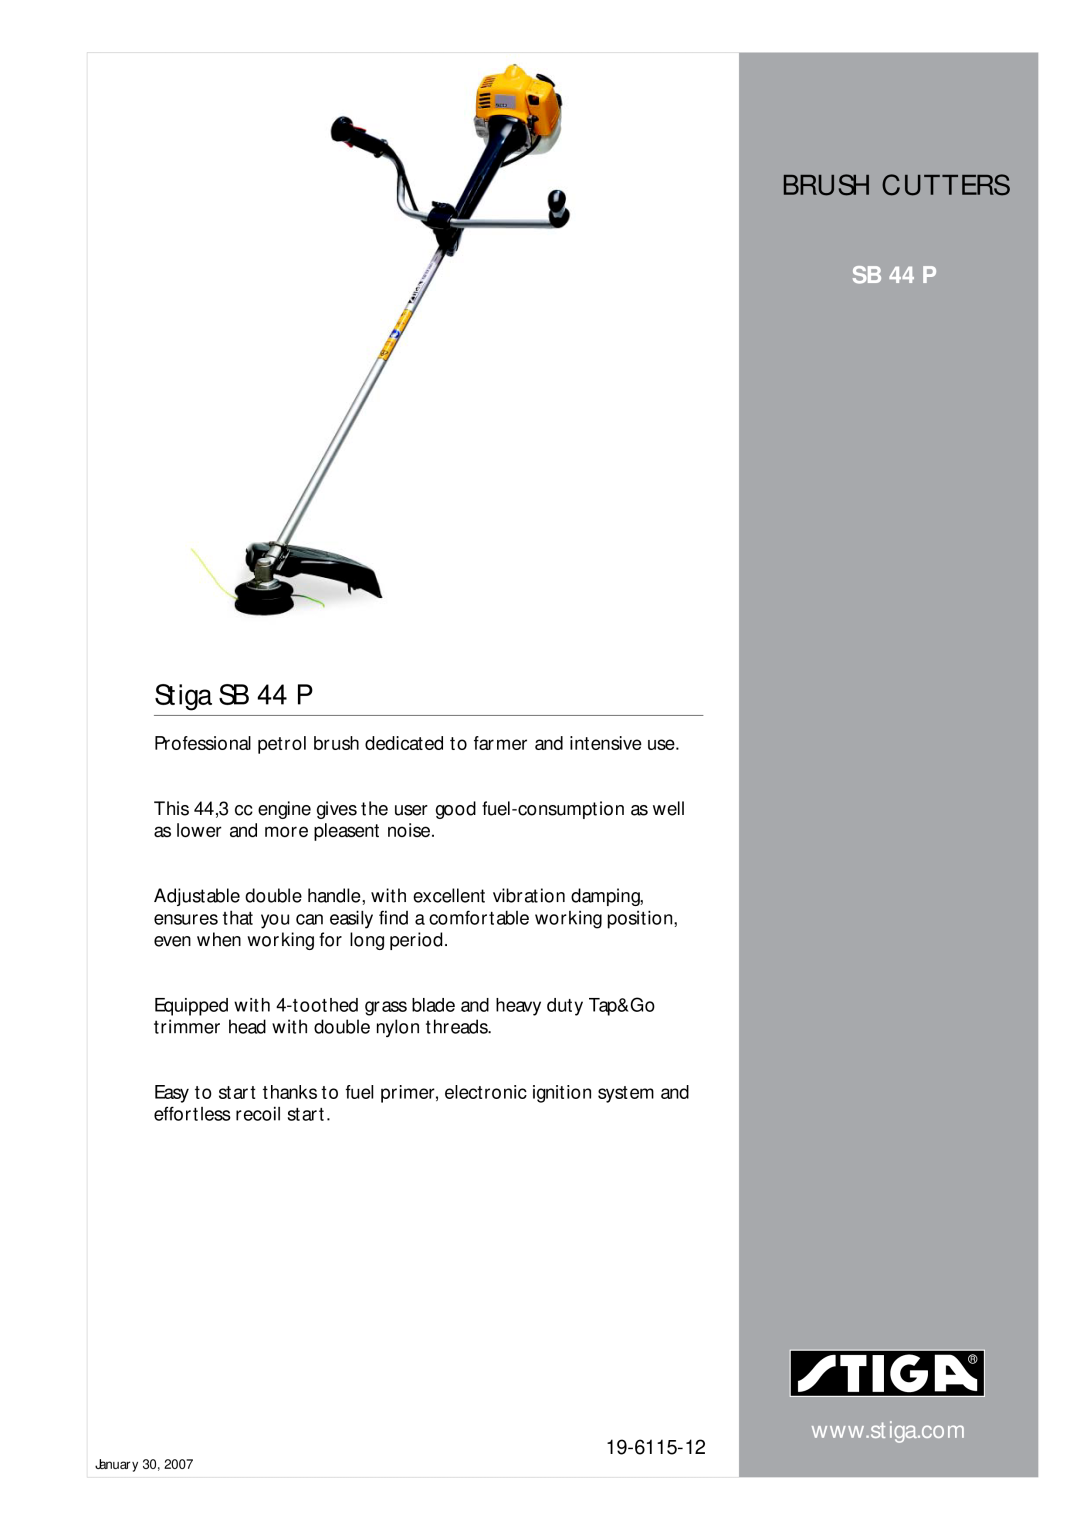 Stiga manual Brush Cutters, Stiga SB 44 P, 19-6115-12 